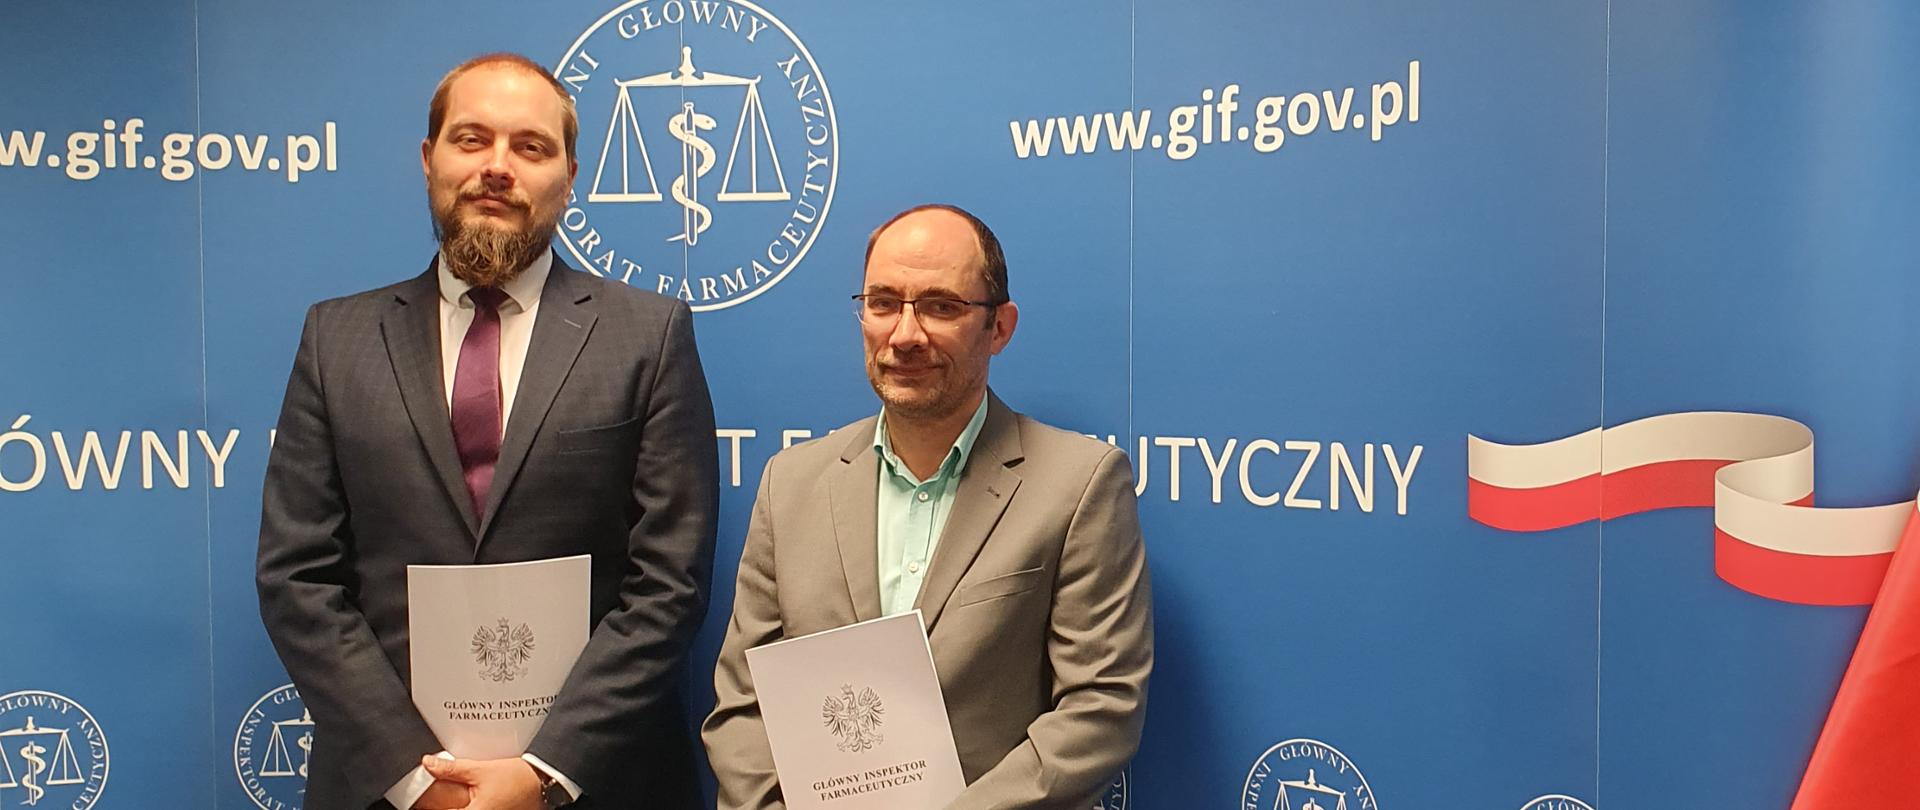 na ściance z logo GIF stoją od lewej: Tomasz Lisiewski - Dyrektor Departamentu Nadzoru Farmaceutycznego i Marcin Rynkiewicz - Dyrektor Departamentu Inspekcji